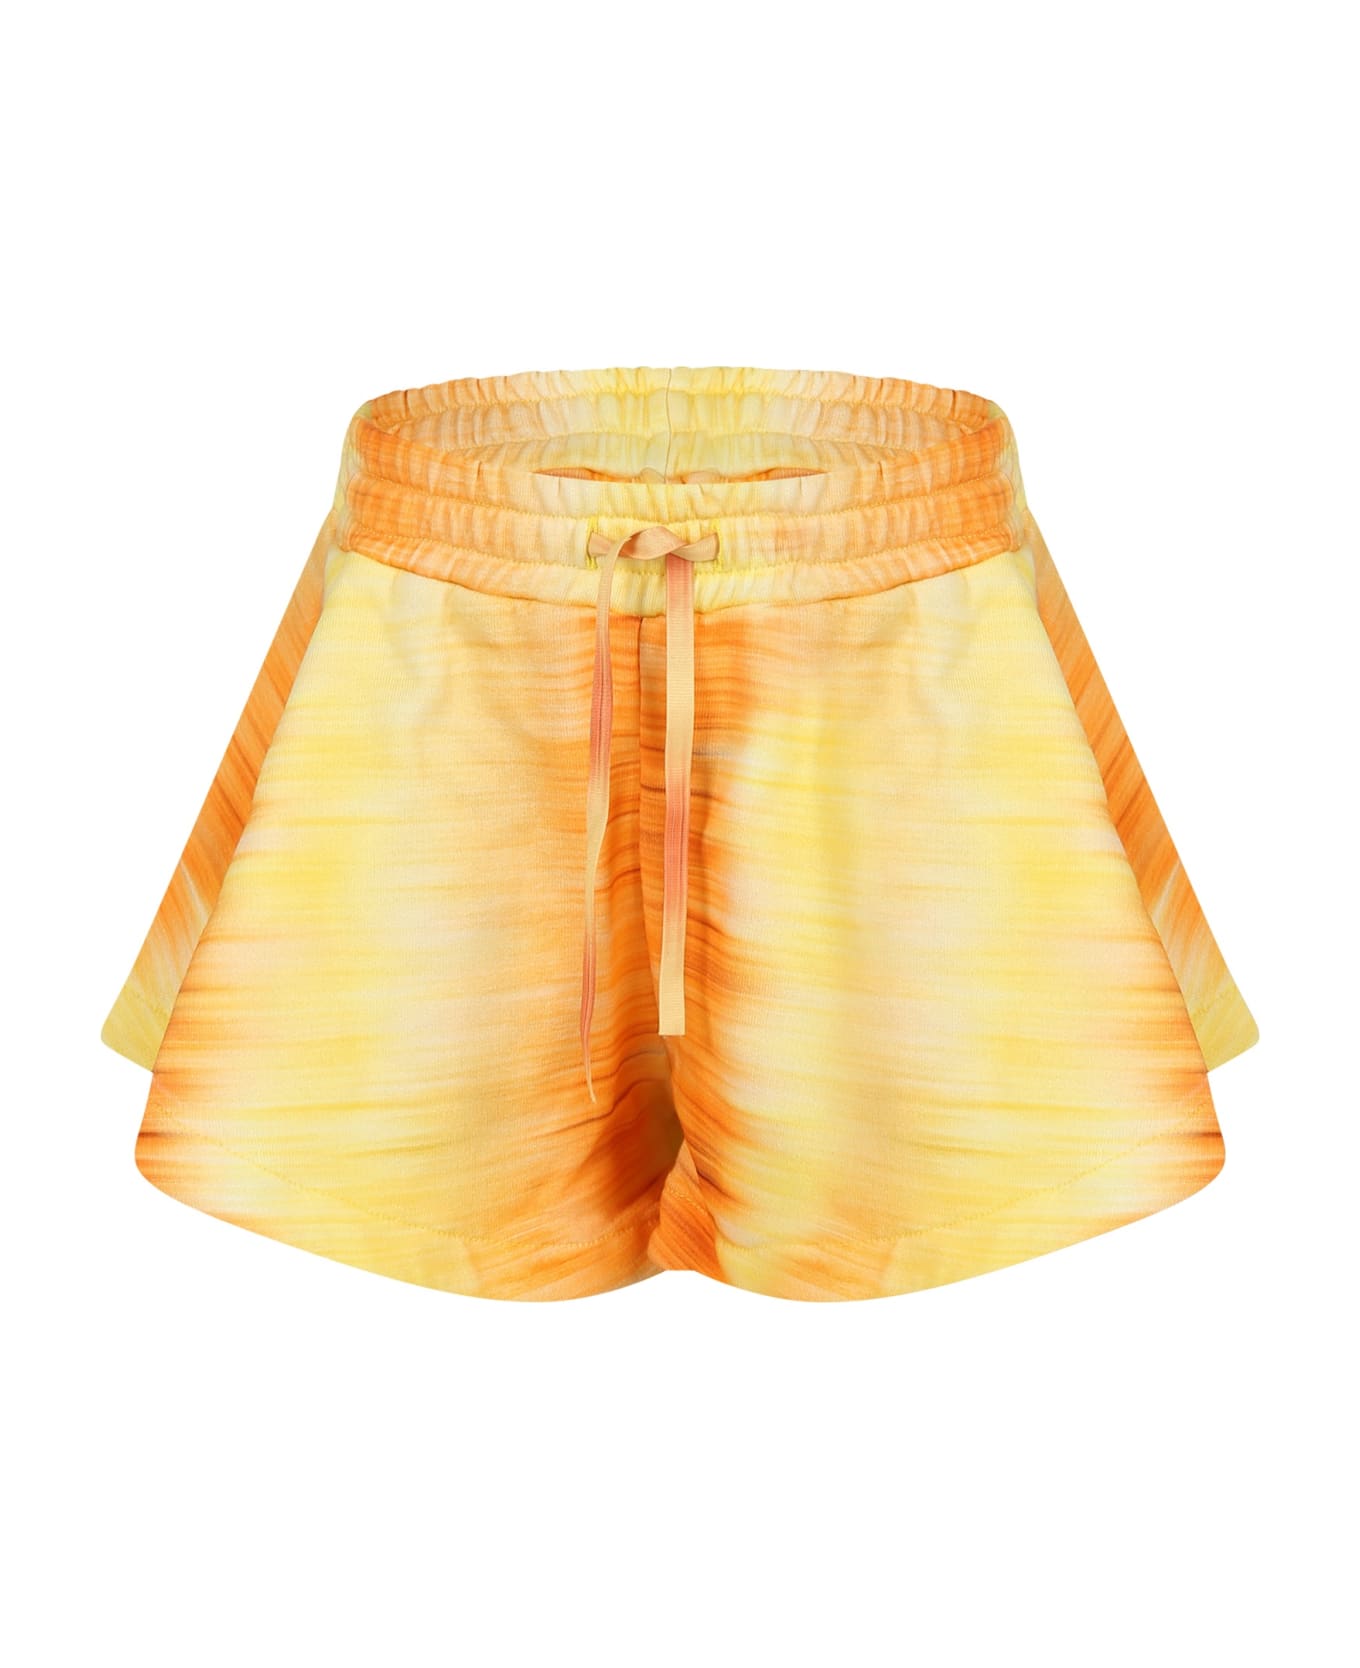 MSGM Orange Shorts For Girl With Logo - Orange